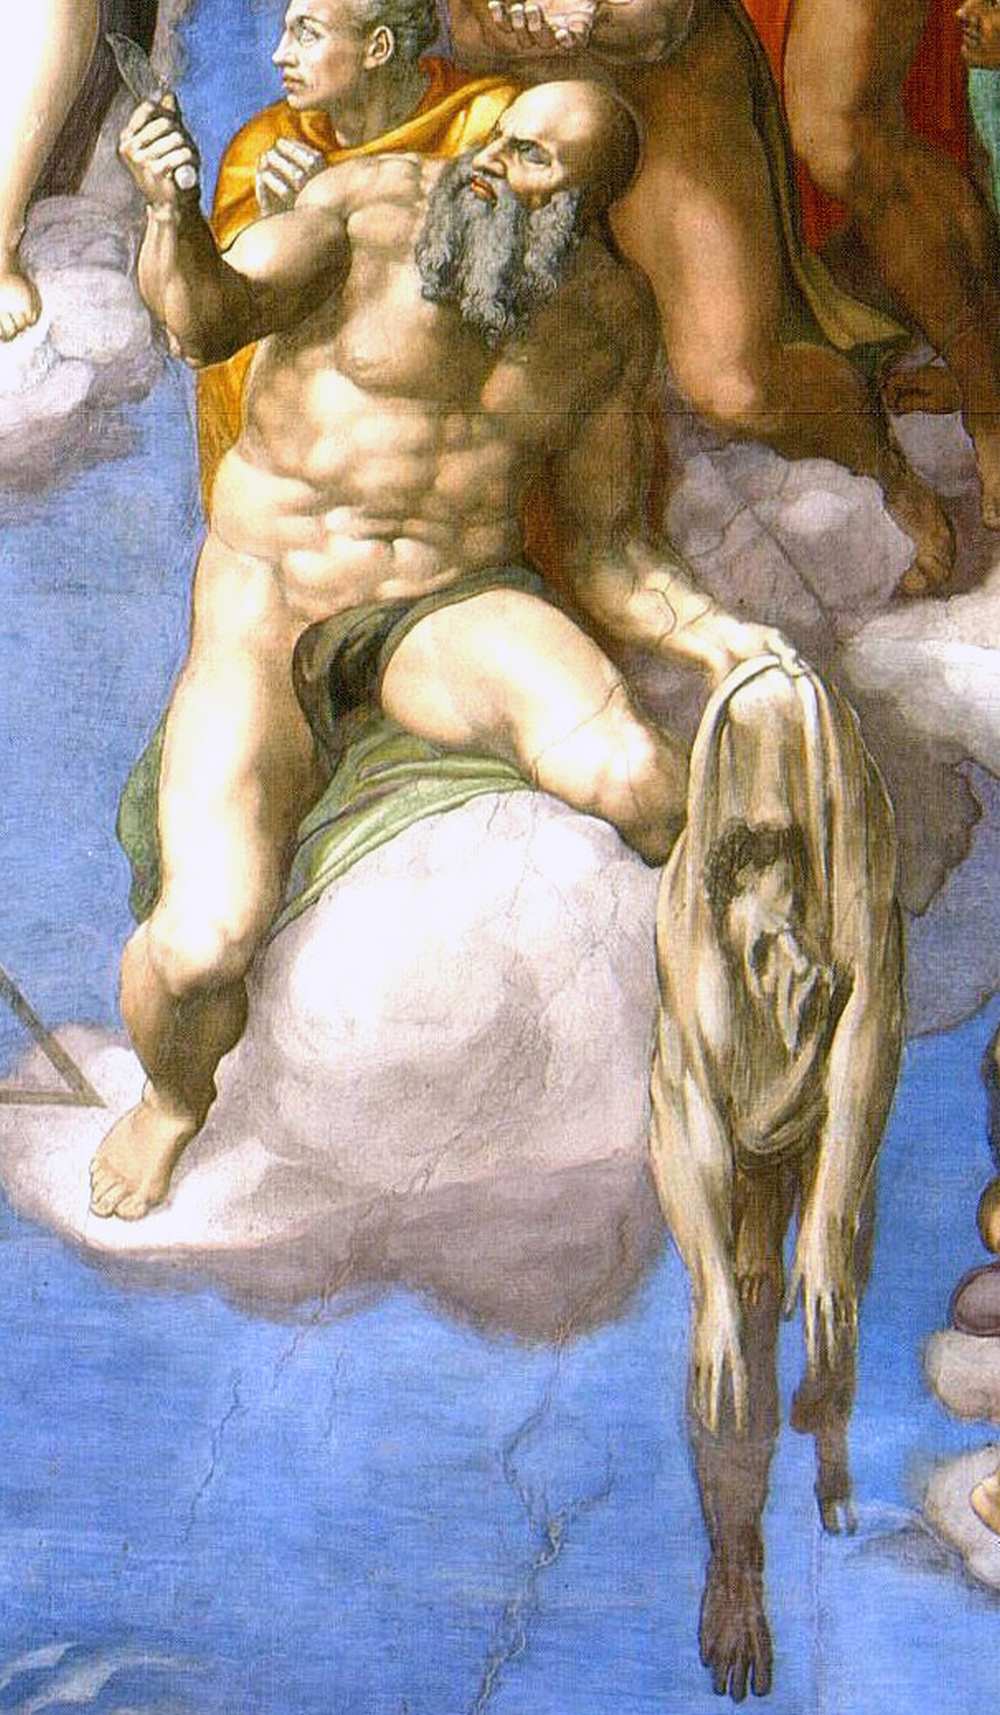 Michelangelo Buonarotti: Utolsó ítélet. A Sixtus-kápolna (Vatikánváros, Róma) oltárfala, 1536–1541. Részlet. A kép forrása: Wikipédia https://tinyurl.com/2sp36fau